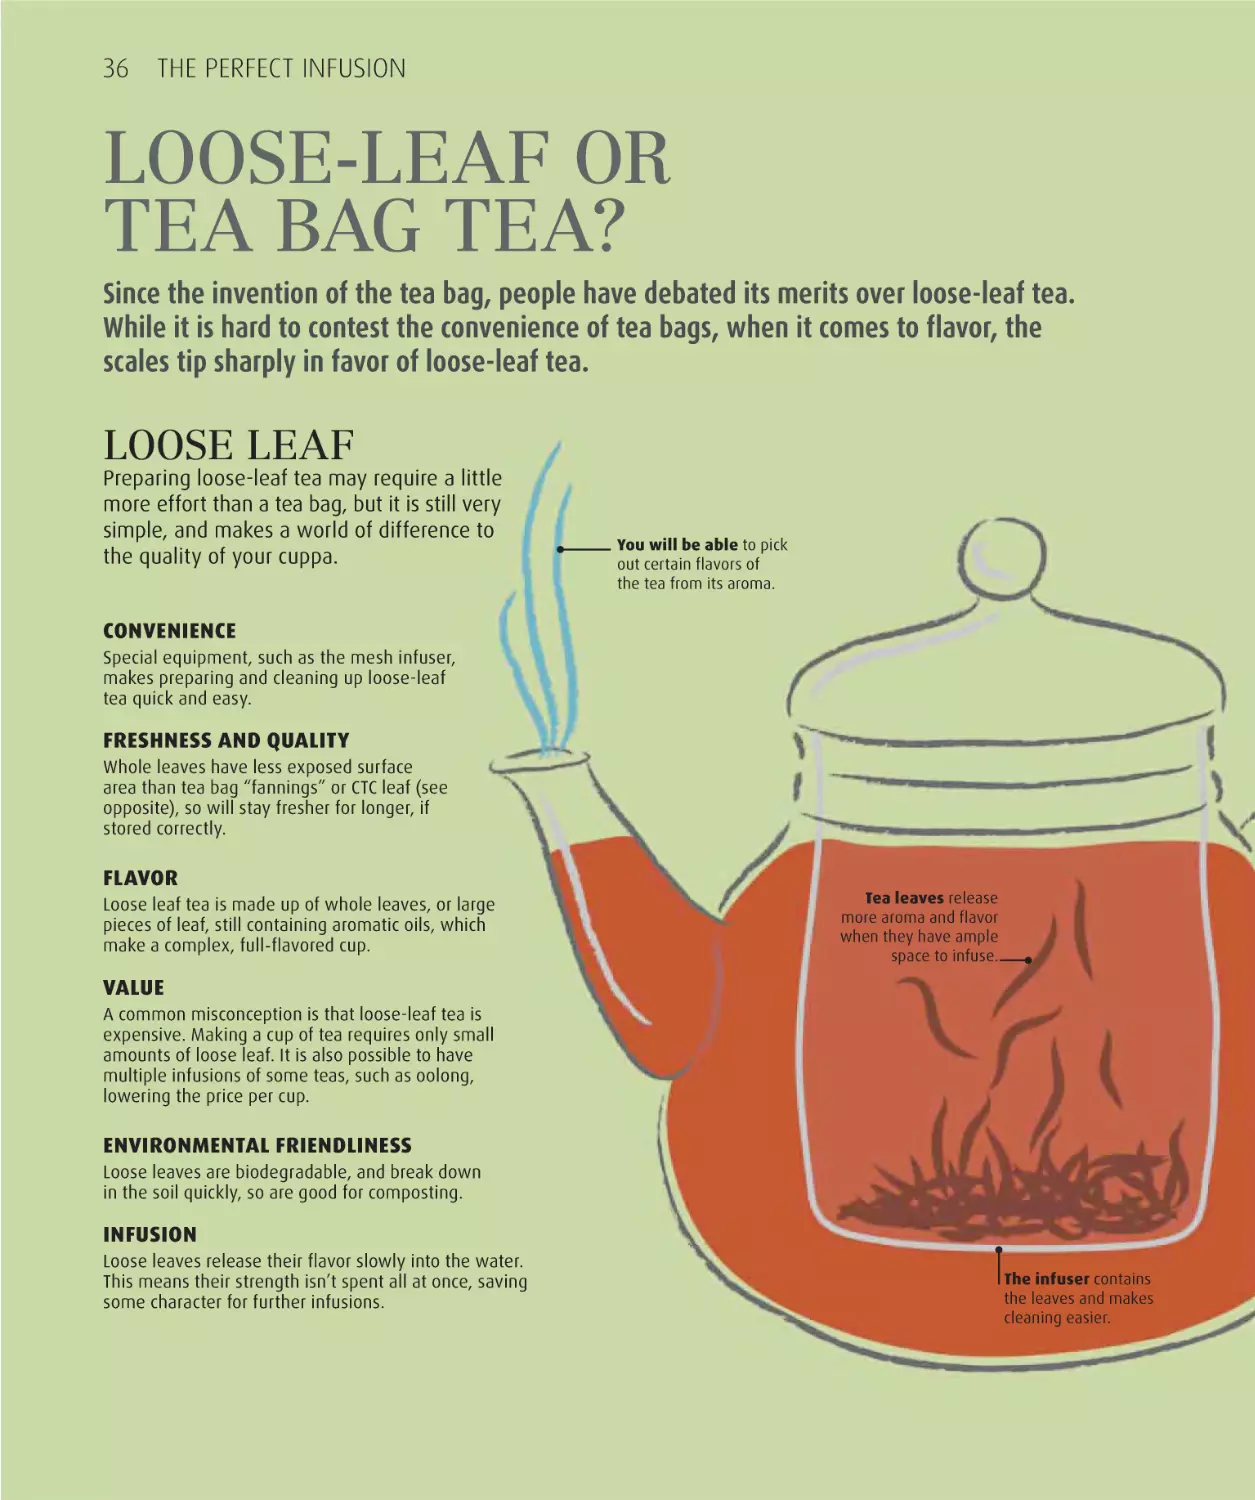 Tea bag or loose-leaf tea? 36